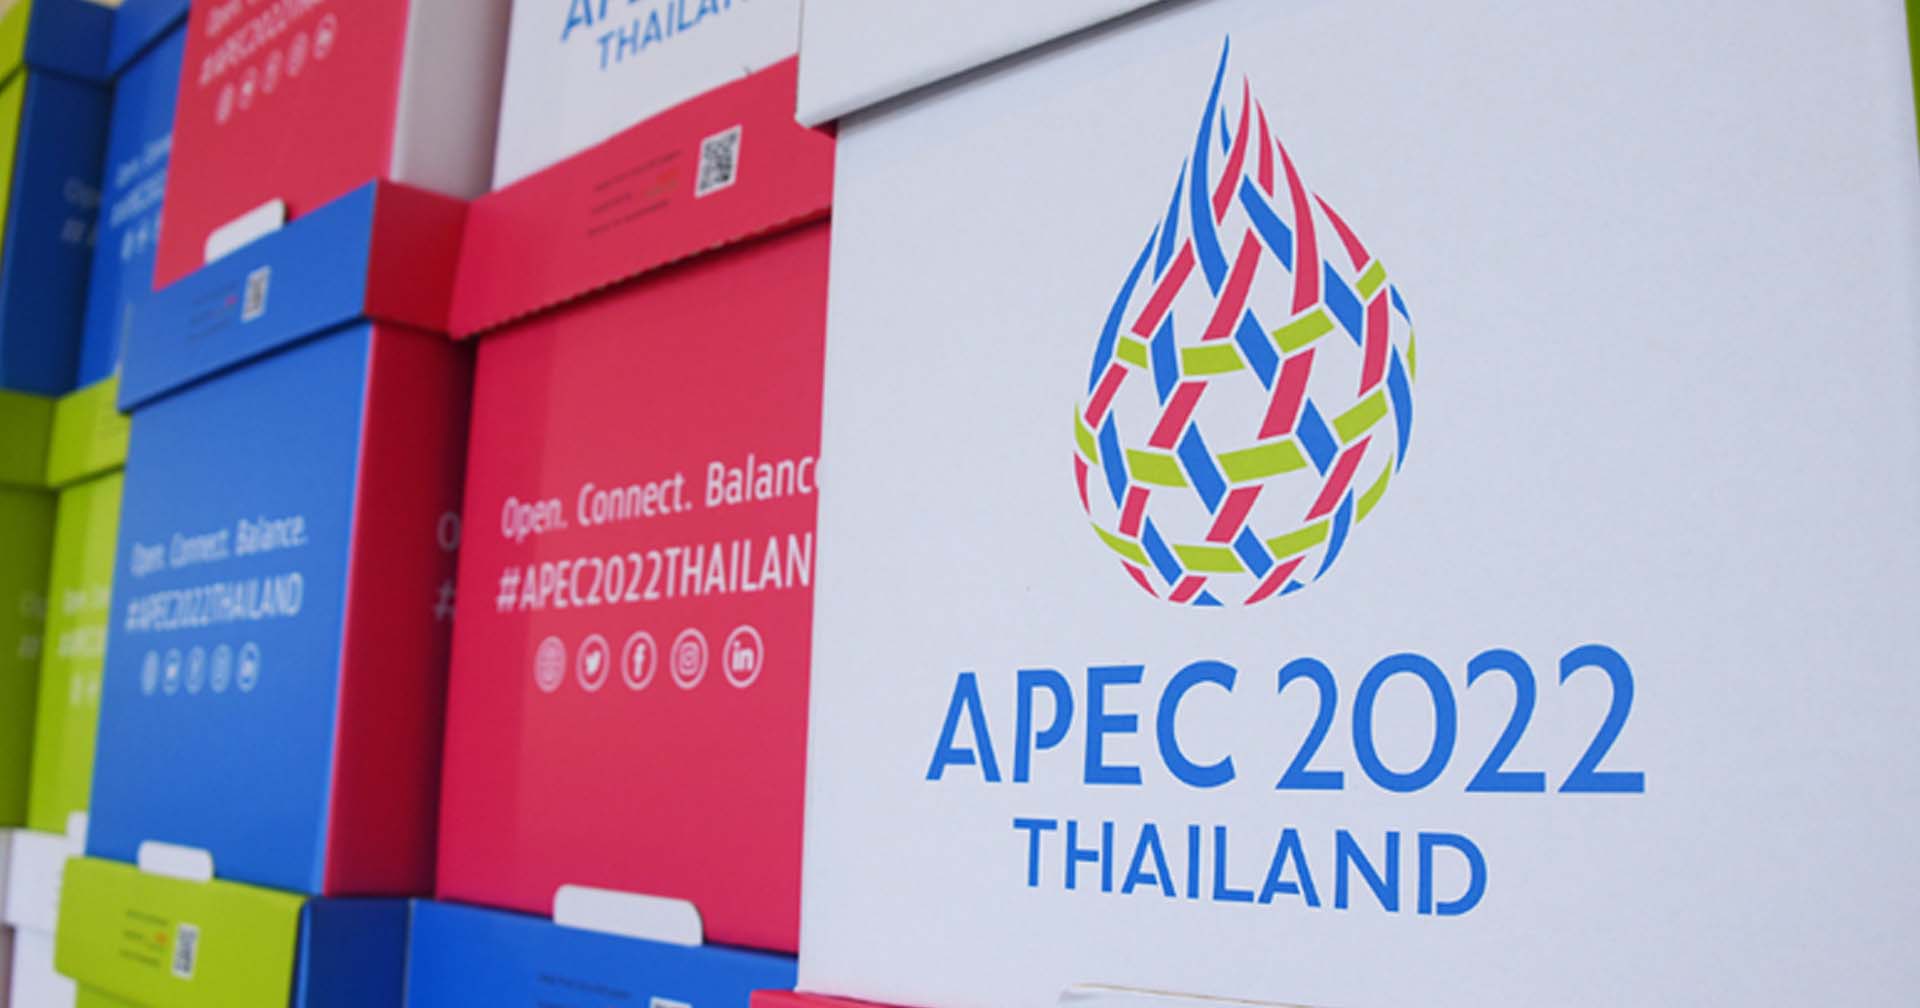 ลงทะเบียนเข้า – ออกพื้นที่ปิดช่วงประชุม APEC 2022 ได้ที่ไหน ?